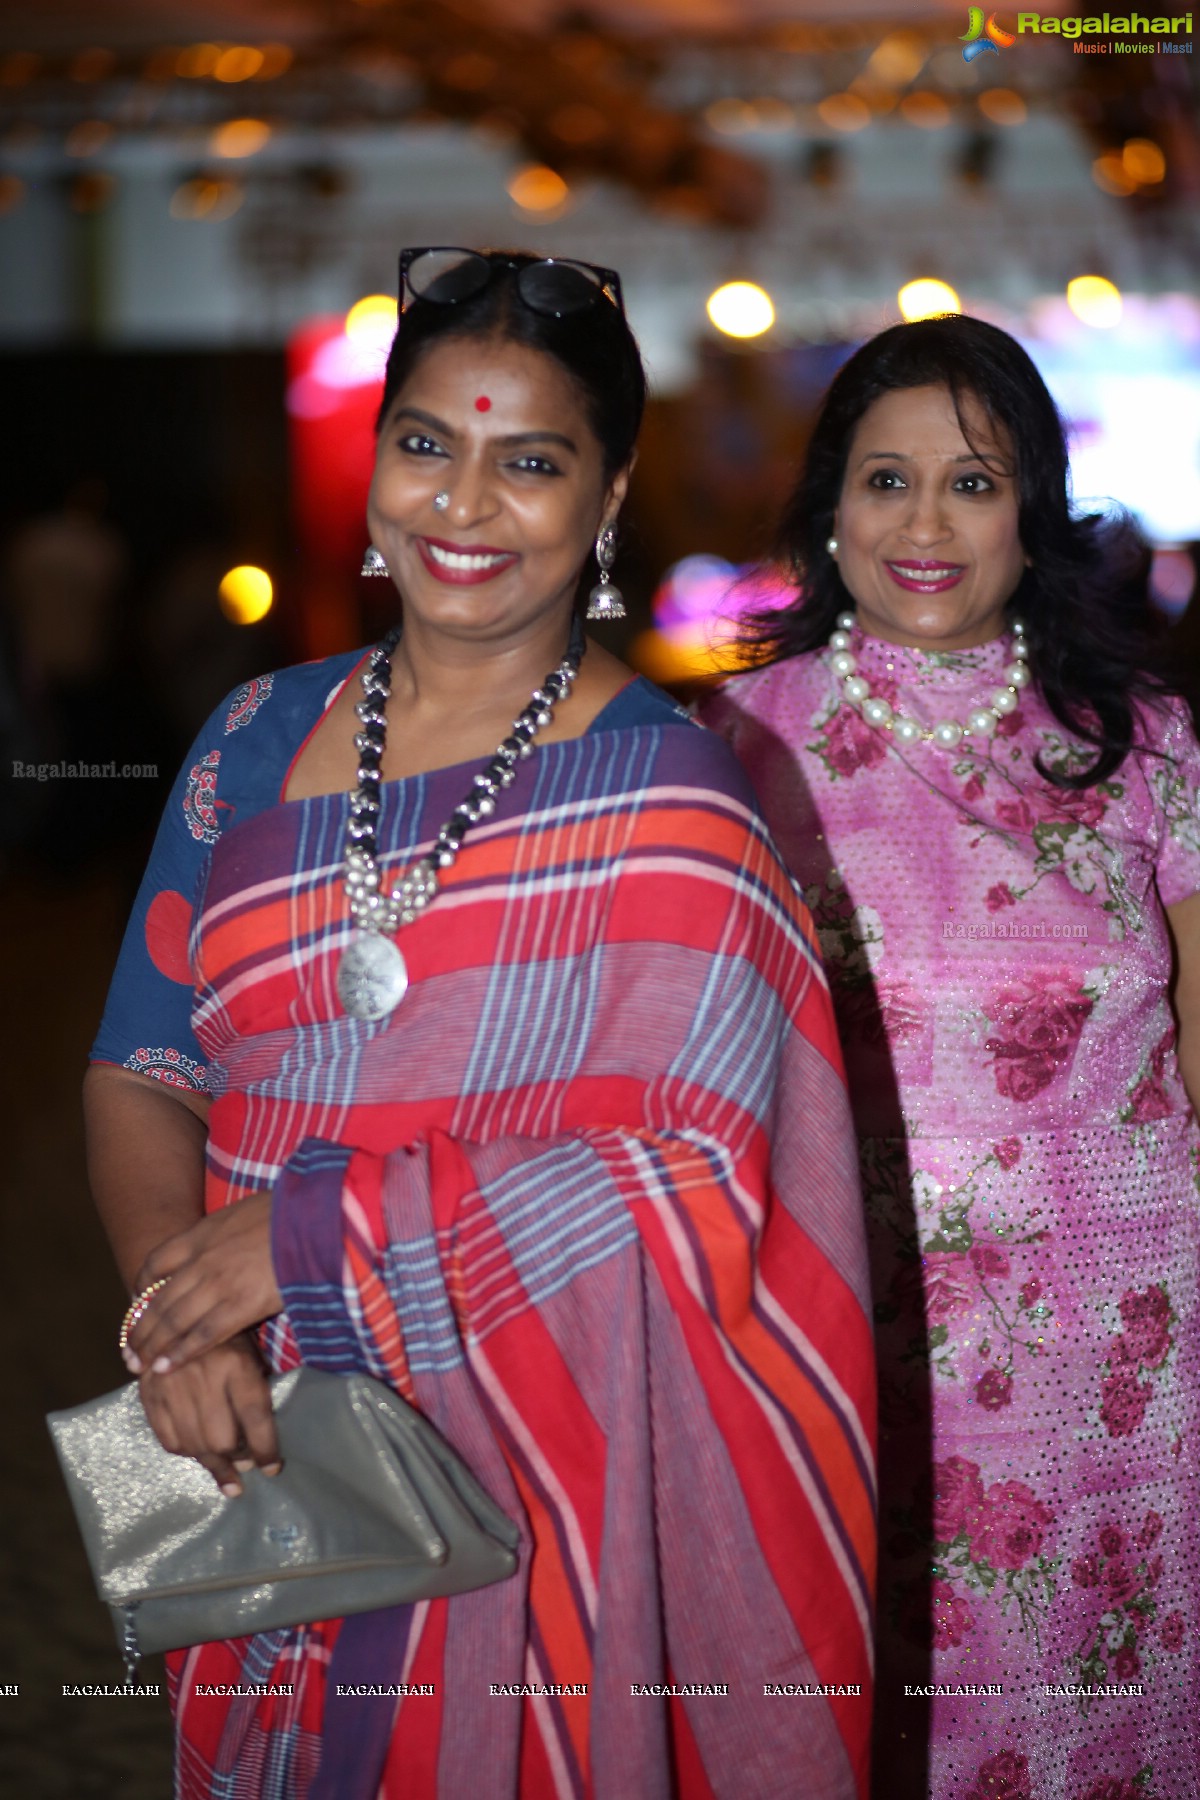 Fashion Walk by 51 Smile Foundation at Sandhya Convention, Gachibowli